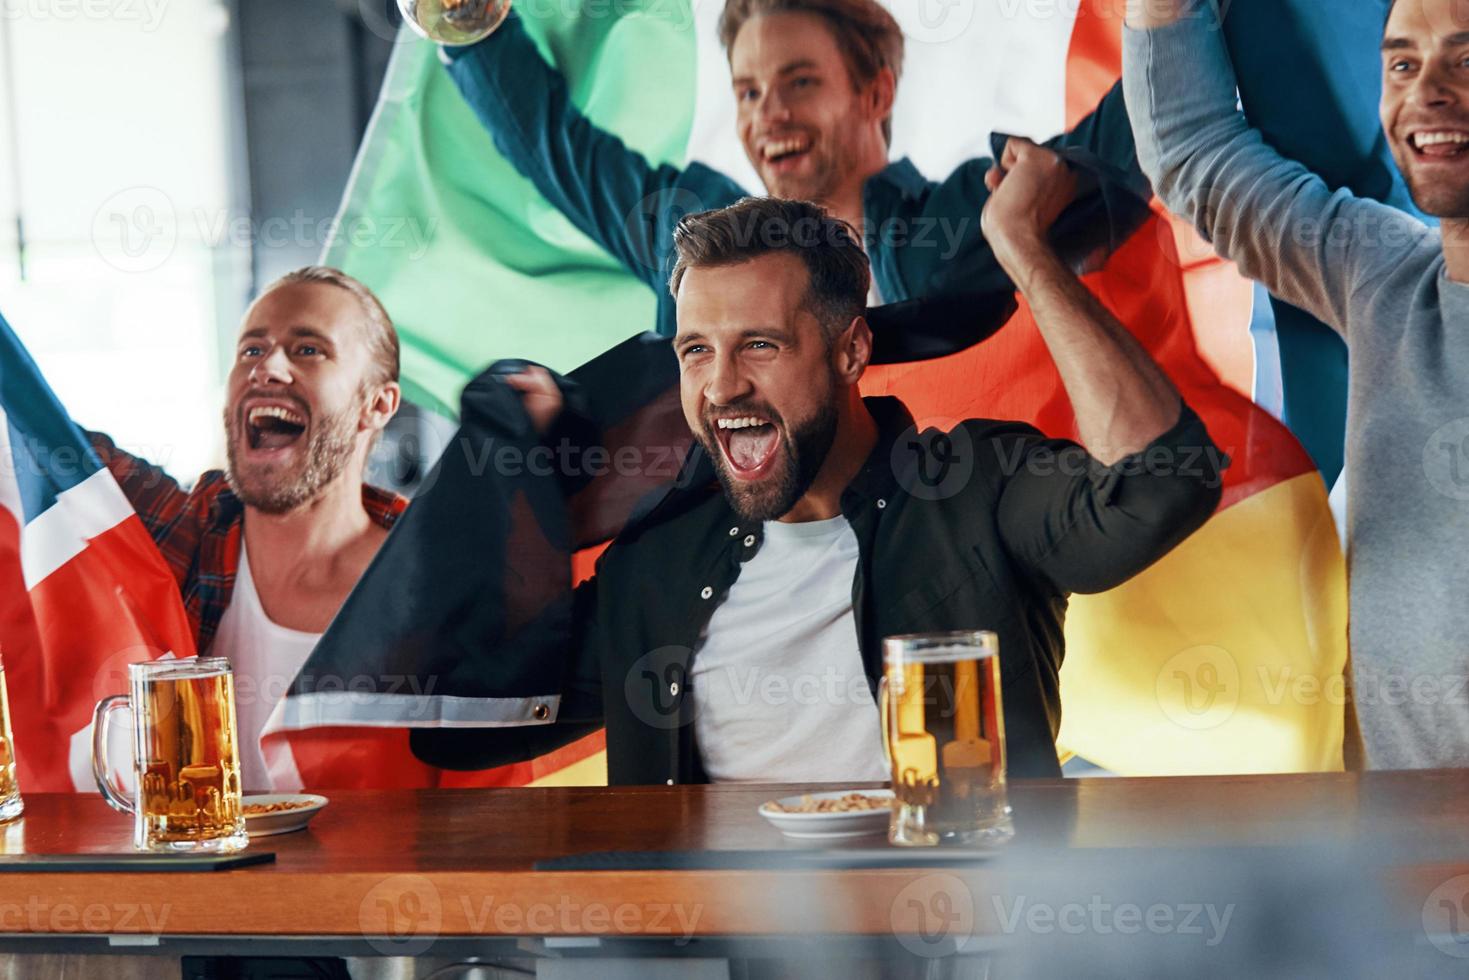 juichen jong mannen gedekt in Internationale vlaggen genieten van bier terwijl aan het kijken sport spel in de kroeg foto